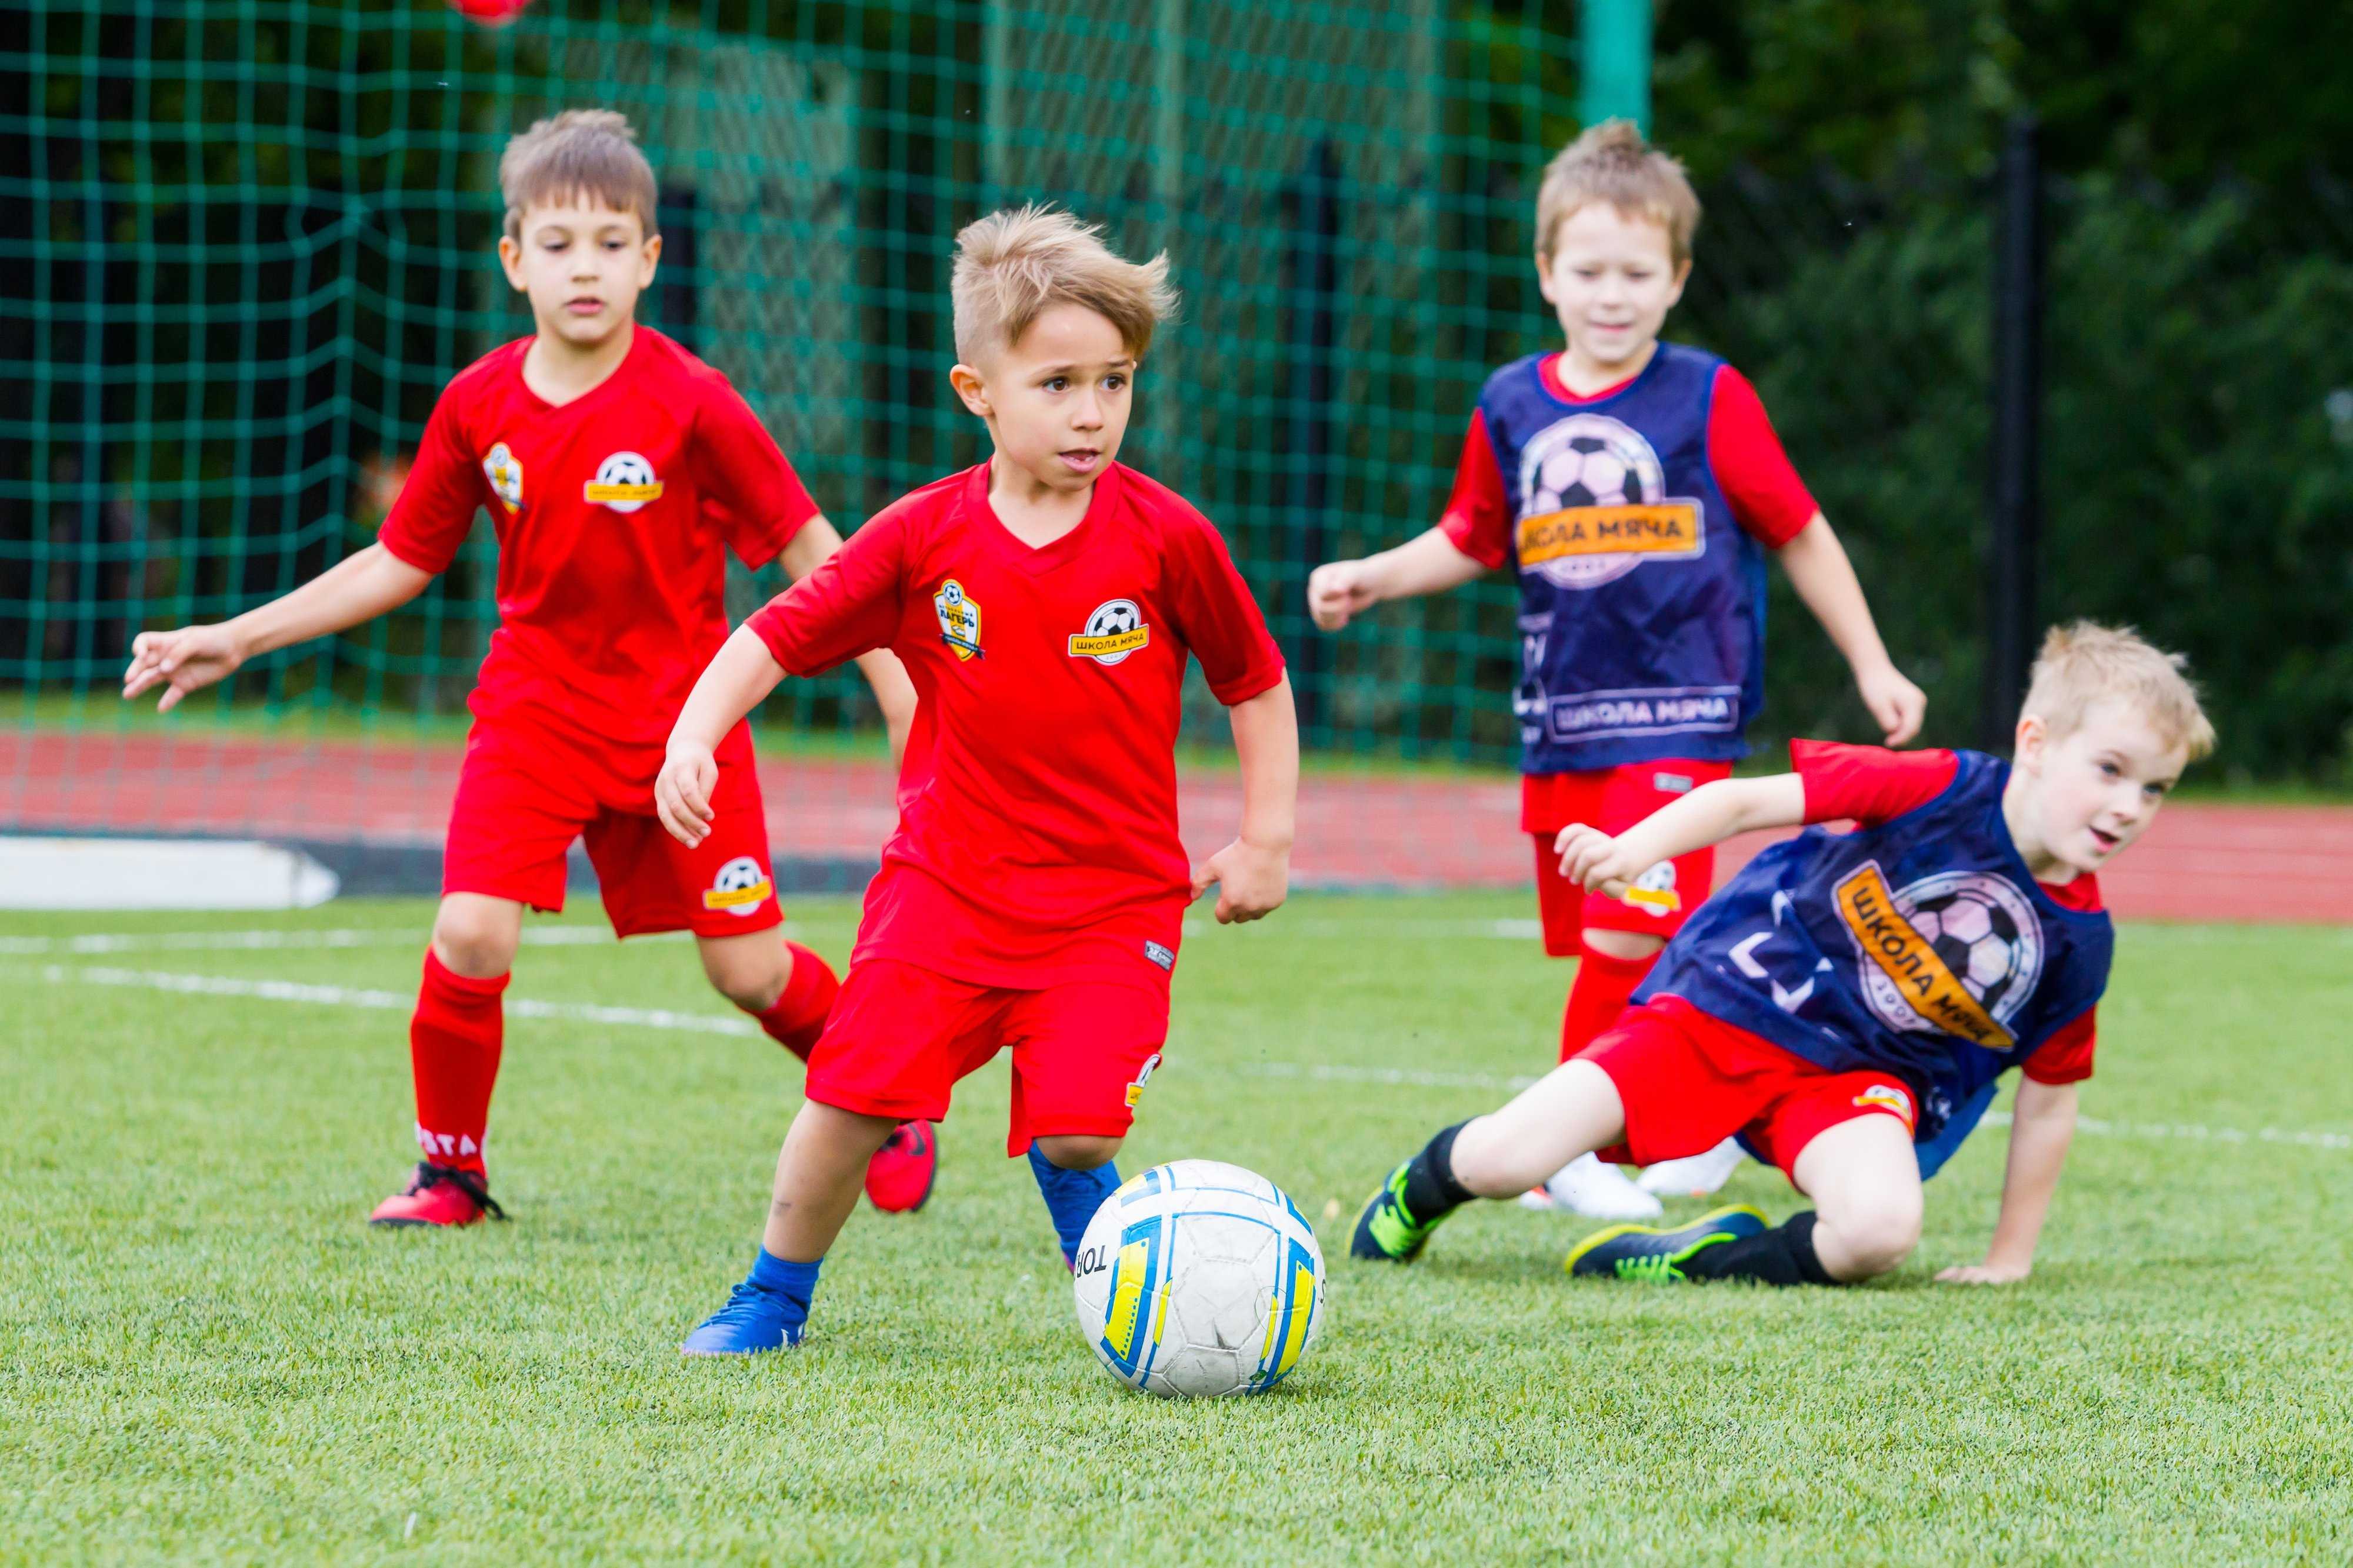 Игры футбол - играть онлайн бесплатно для мальчиков в 2017 году